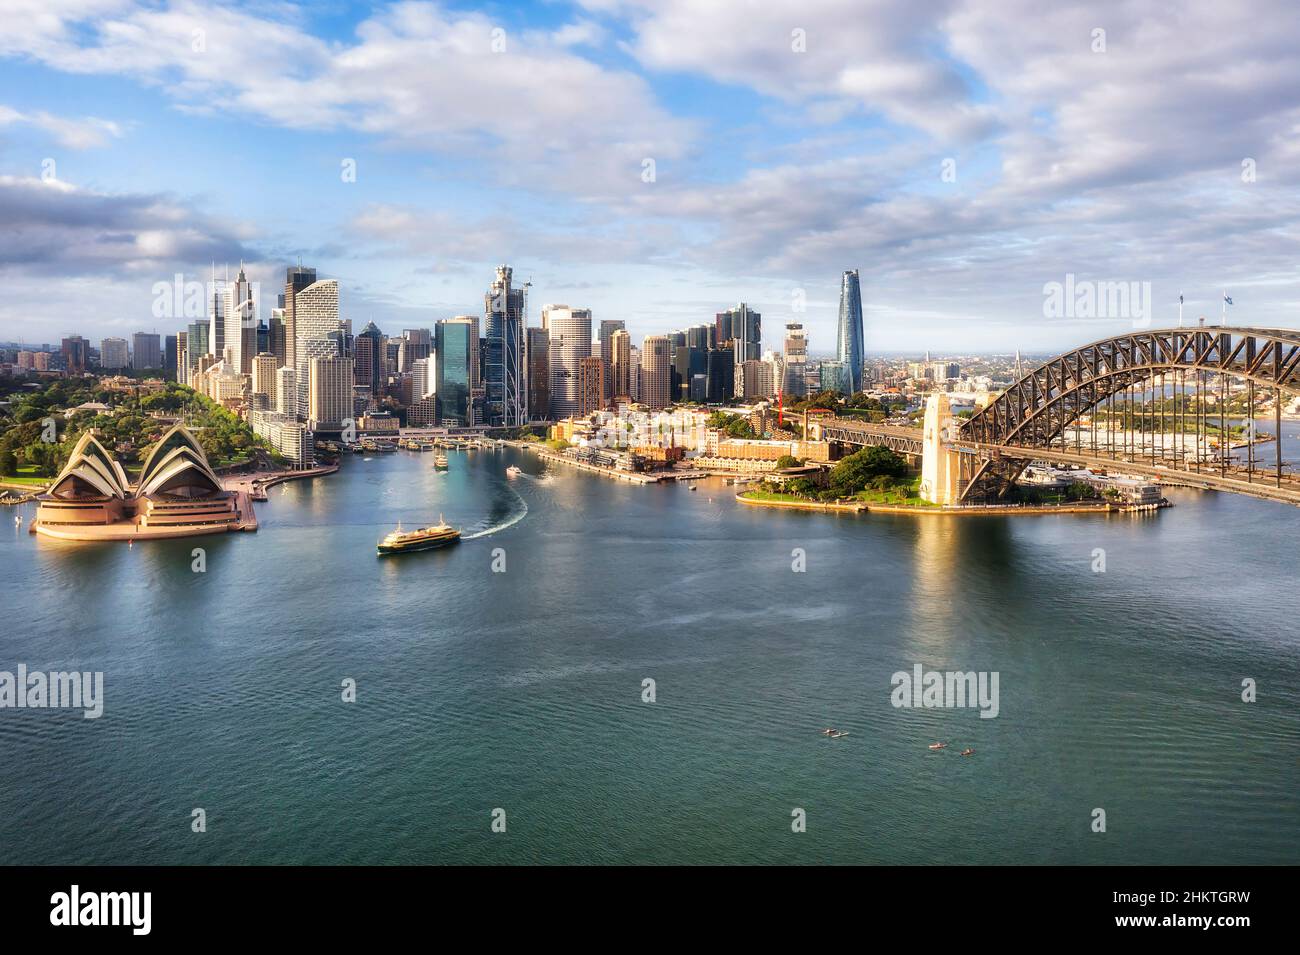 Am Wasser gelegene architektonische Wahrzeichen der Stadt Sydney, CDB, rund um den Circular Quay und die Felsen am Ufer des Hafens in einem Luftbild der Stadt. Stockfoto